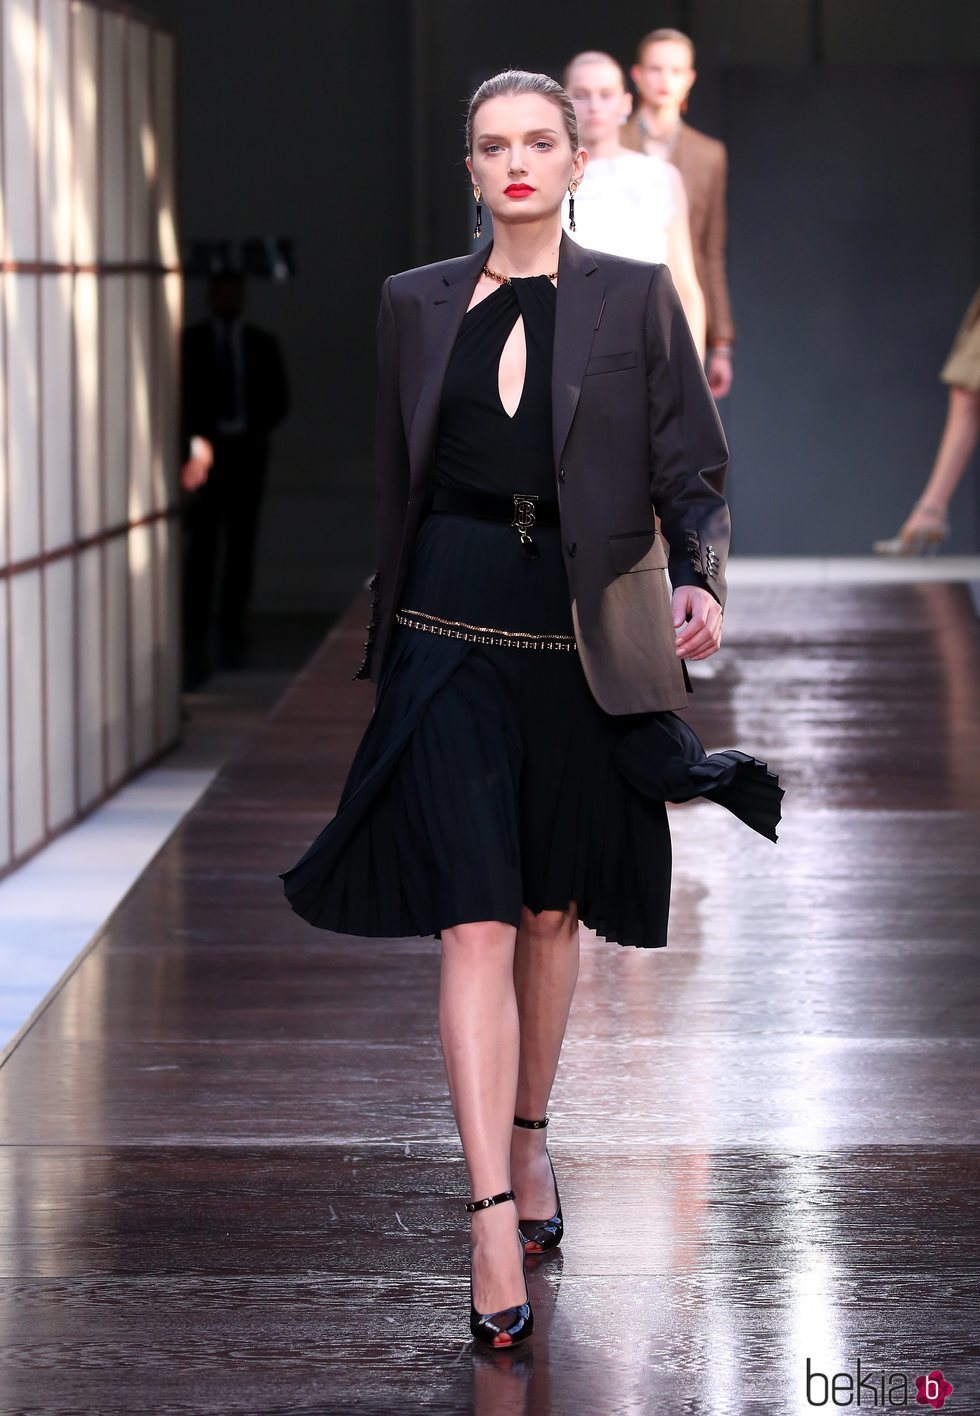 Vestido negro de la colección primavera/verano 2019 de Burberry presentada en la semana de la moda en Londres